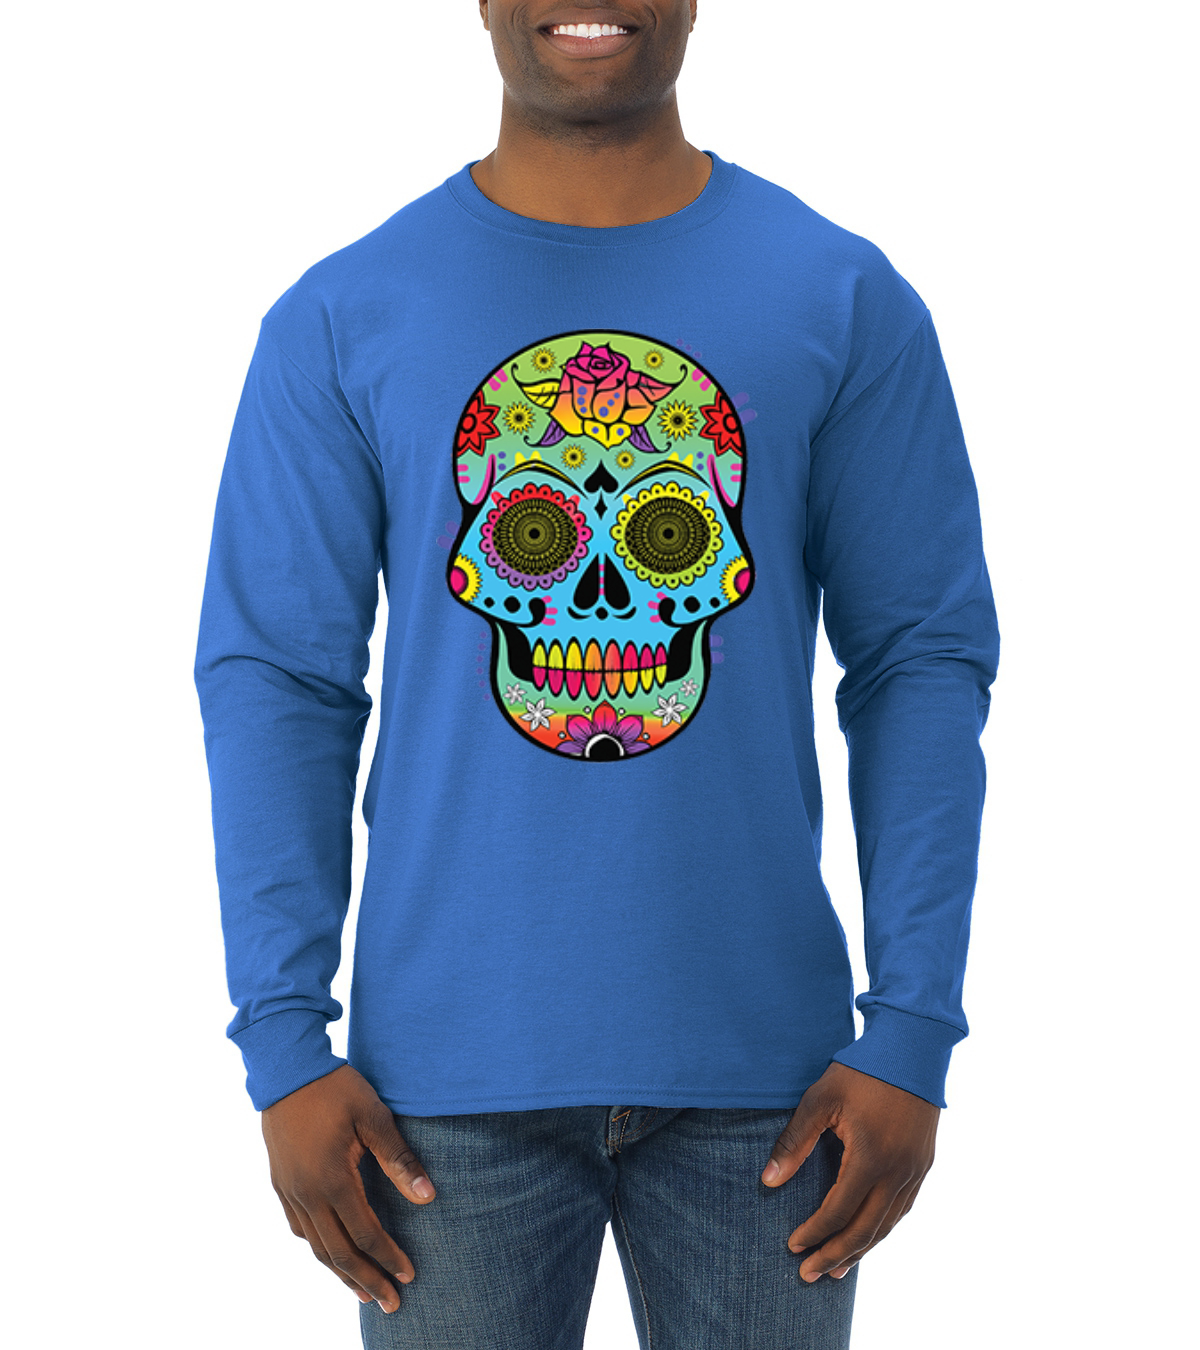 Wild Bobby, Colorful Floral Sugar Skull Streetwear Mens Long Sleeve Shirt, Royal, Small - image 1 of 3